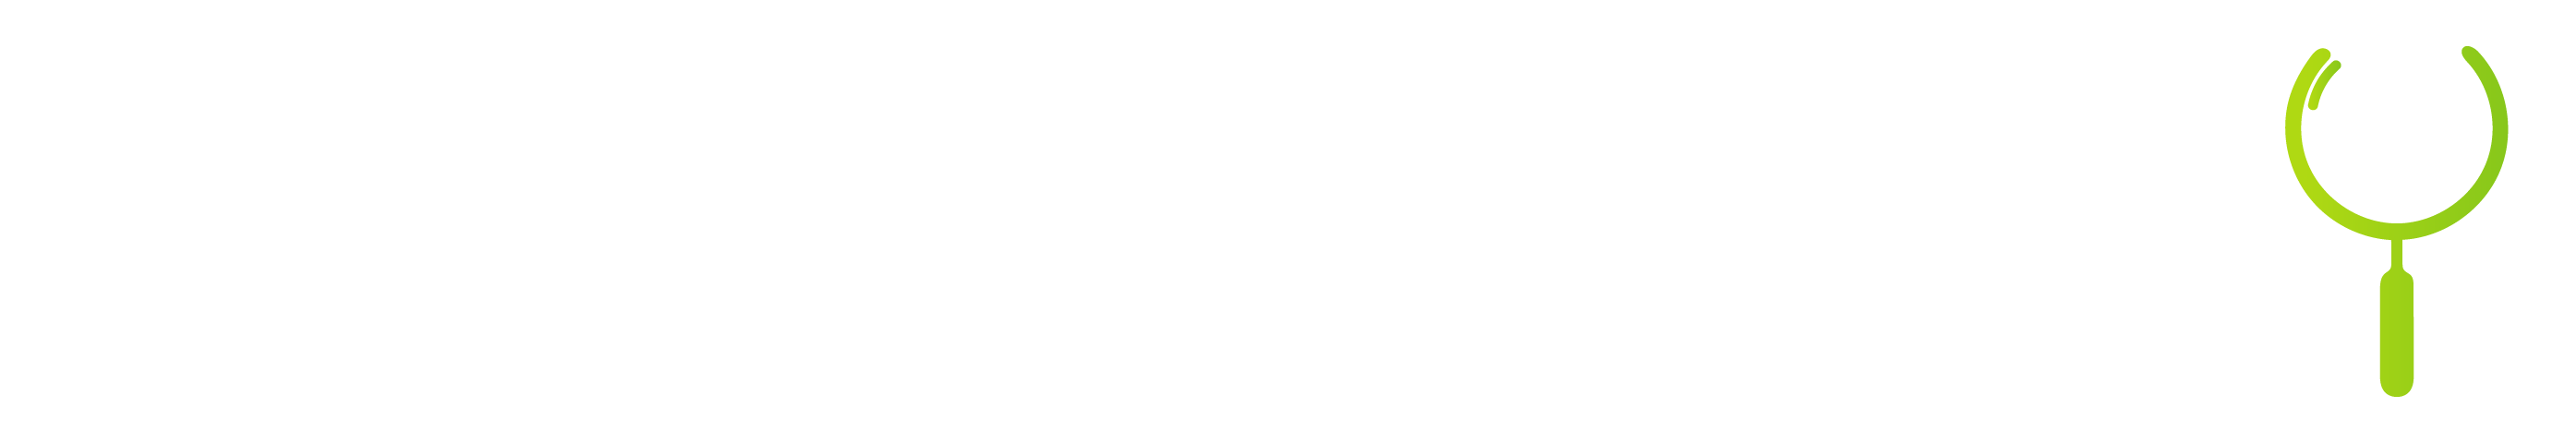 factcheckly.org logo